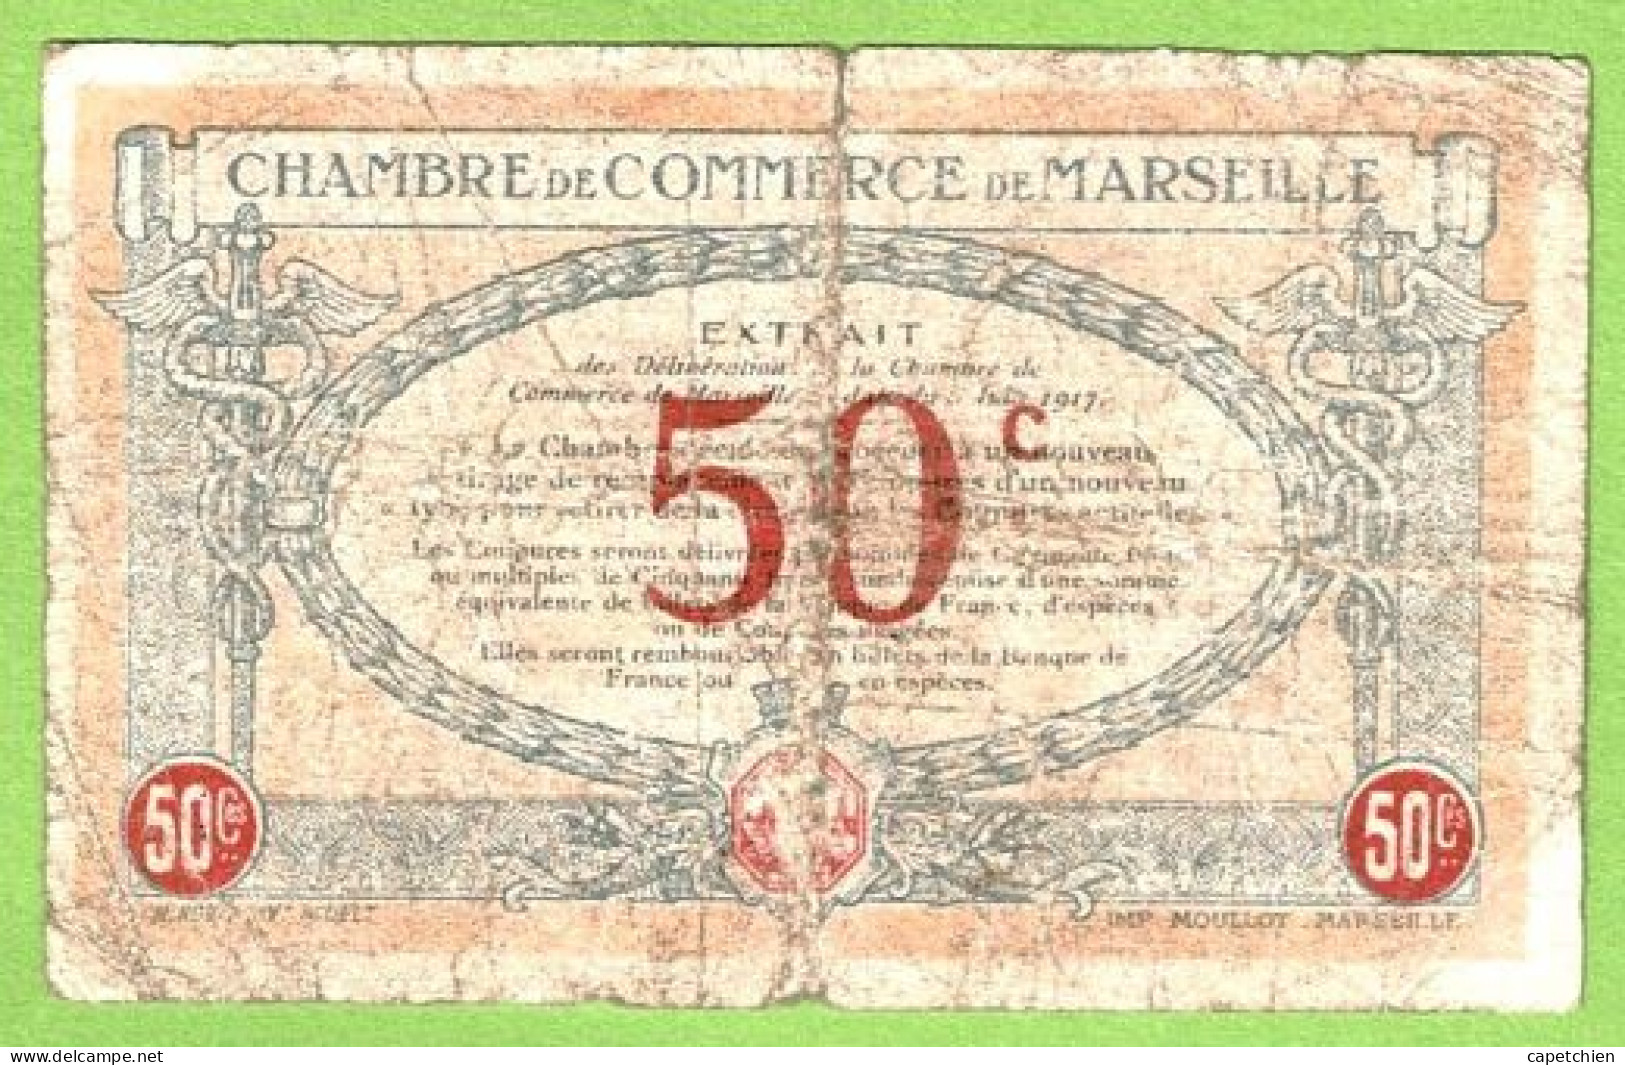 FRANCE / CHAMBRE De COMMERCE / MARSEILLE / 50 CENTIMES / 1917 / N° 57178 / SERIE C - R - Chambre De Commerce